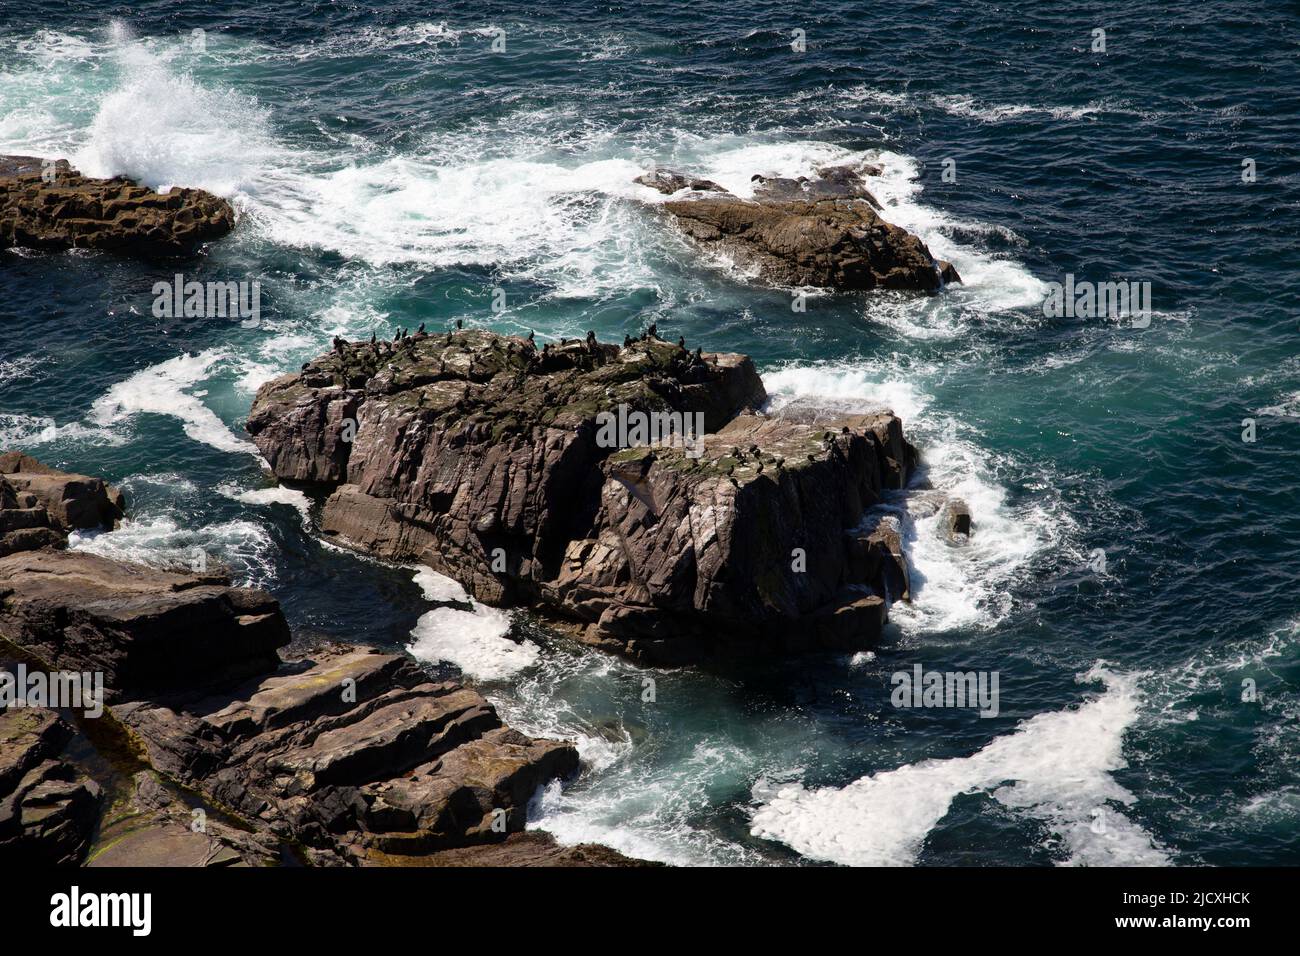 Seabird on rocks, Stoer Head, Assynt, Scotland Stock Photo